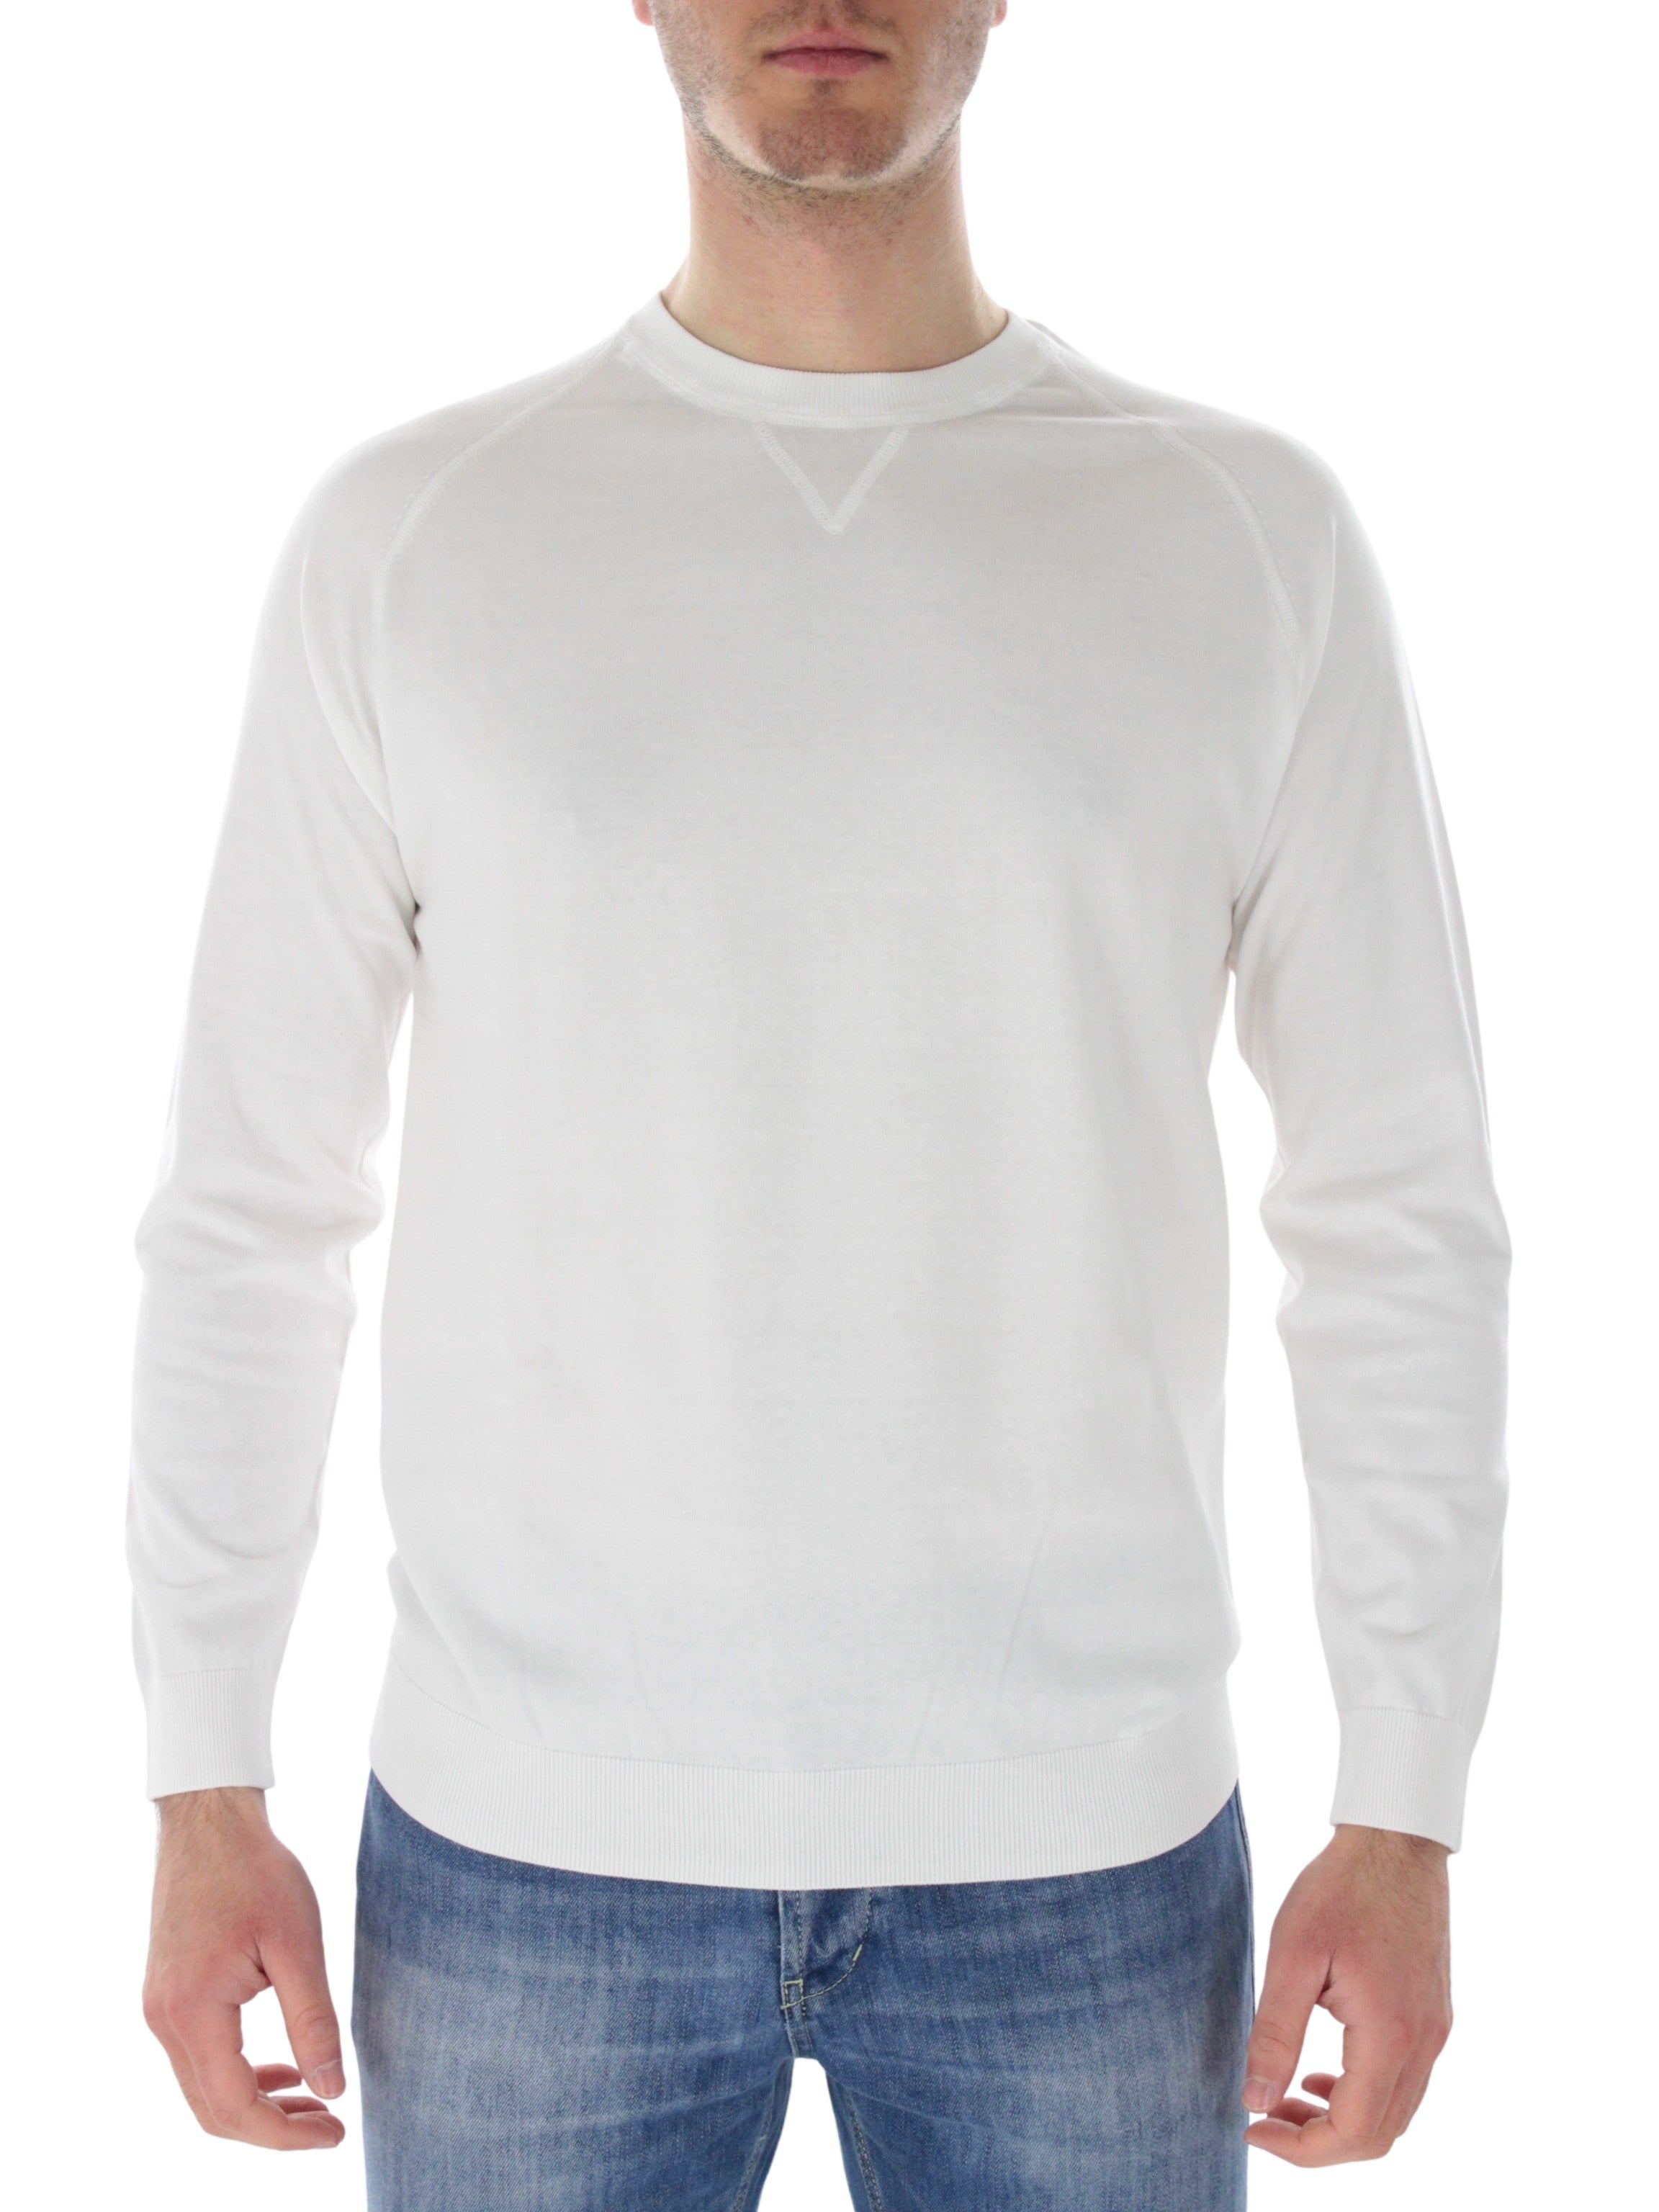 Araki C16 white lap shirt